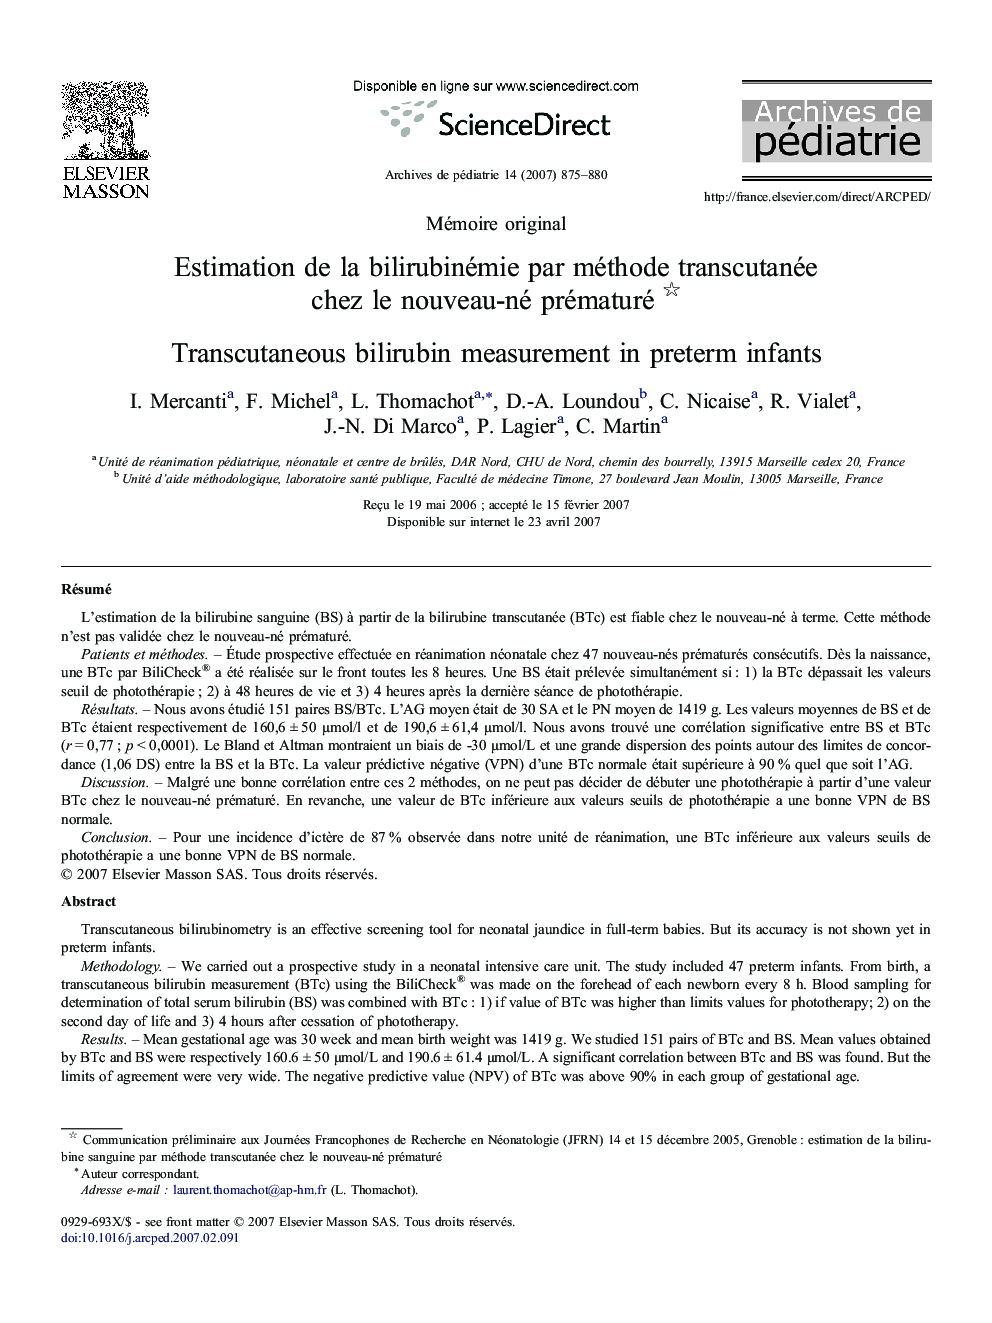 Estimation de la bilirubinémie par méthode transcutanée chez le nouveau-né prématuré 